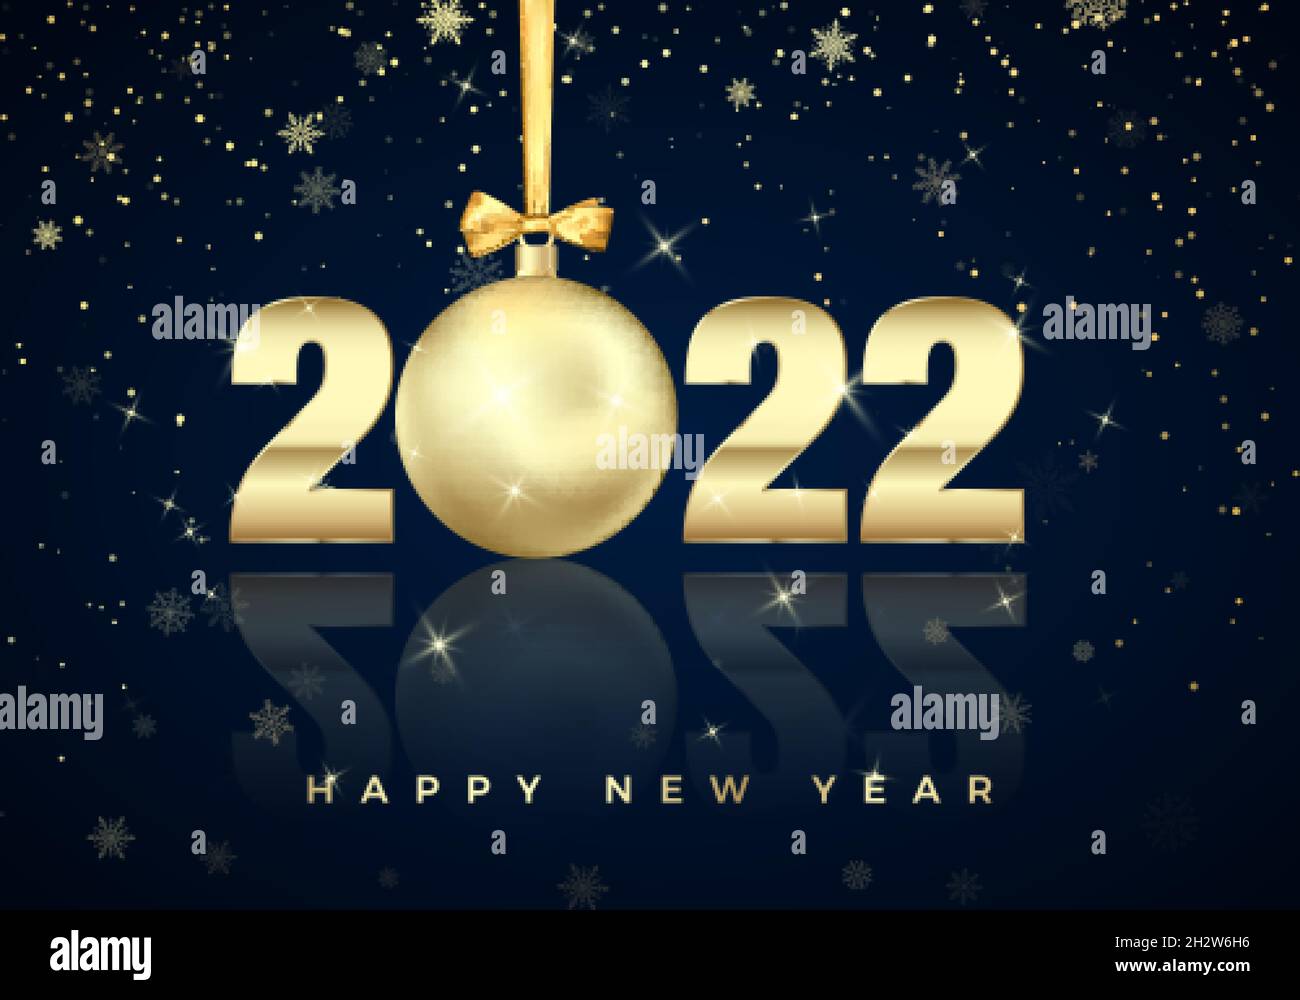 Neujahrsposter mit Grußtext auf blauem Hintergrund. Golden Christmas Ball statt Null im Jahr 2022. Weihnachtsdekoration für Banner oder Einladung Stock Vektor